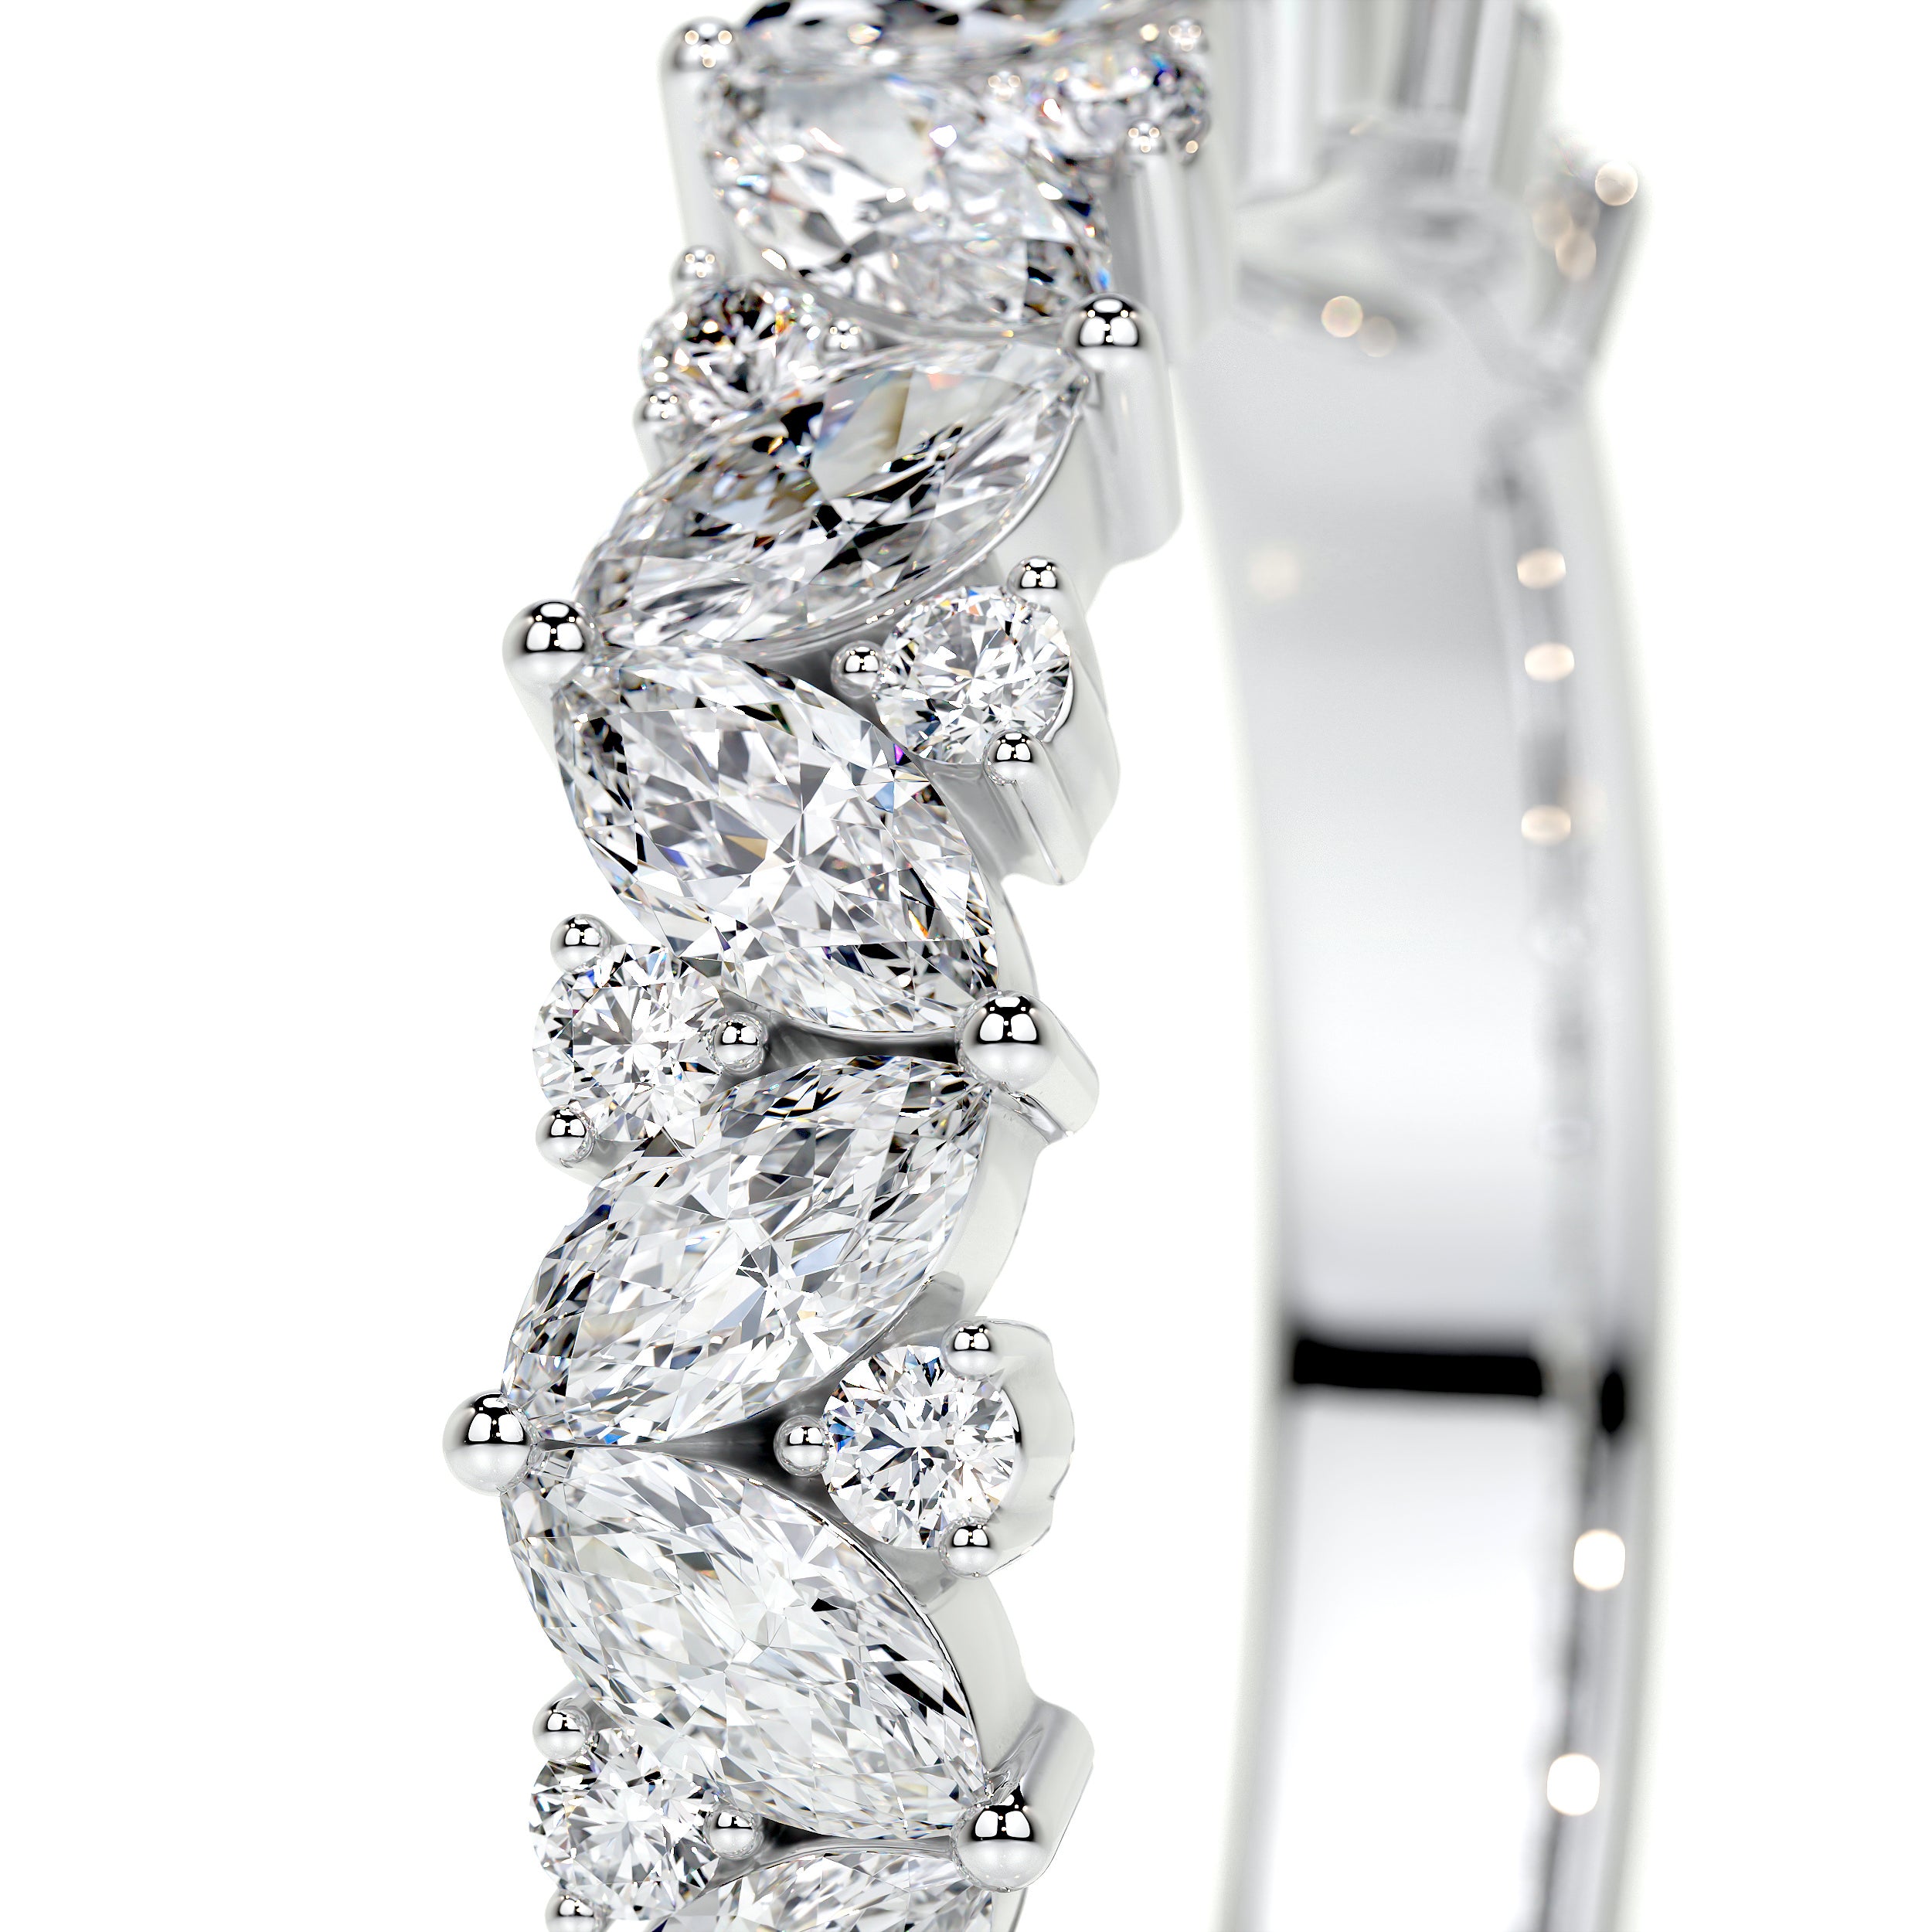 Regina Lab Grown Diamond Wedding Ring   (0.85 Carat) -14K White Gold